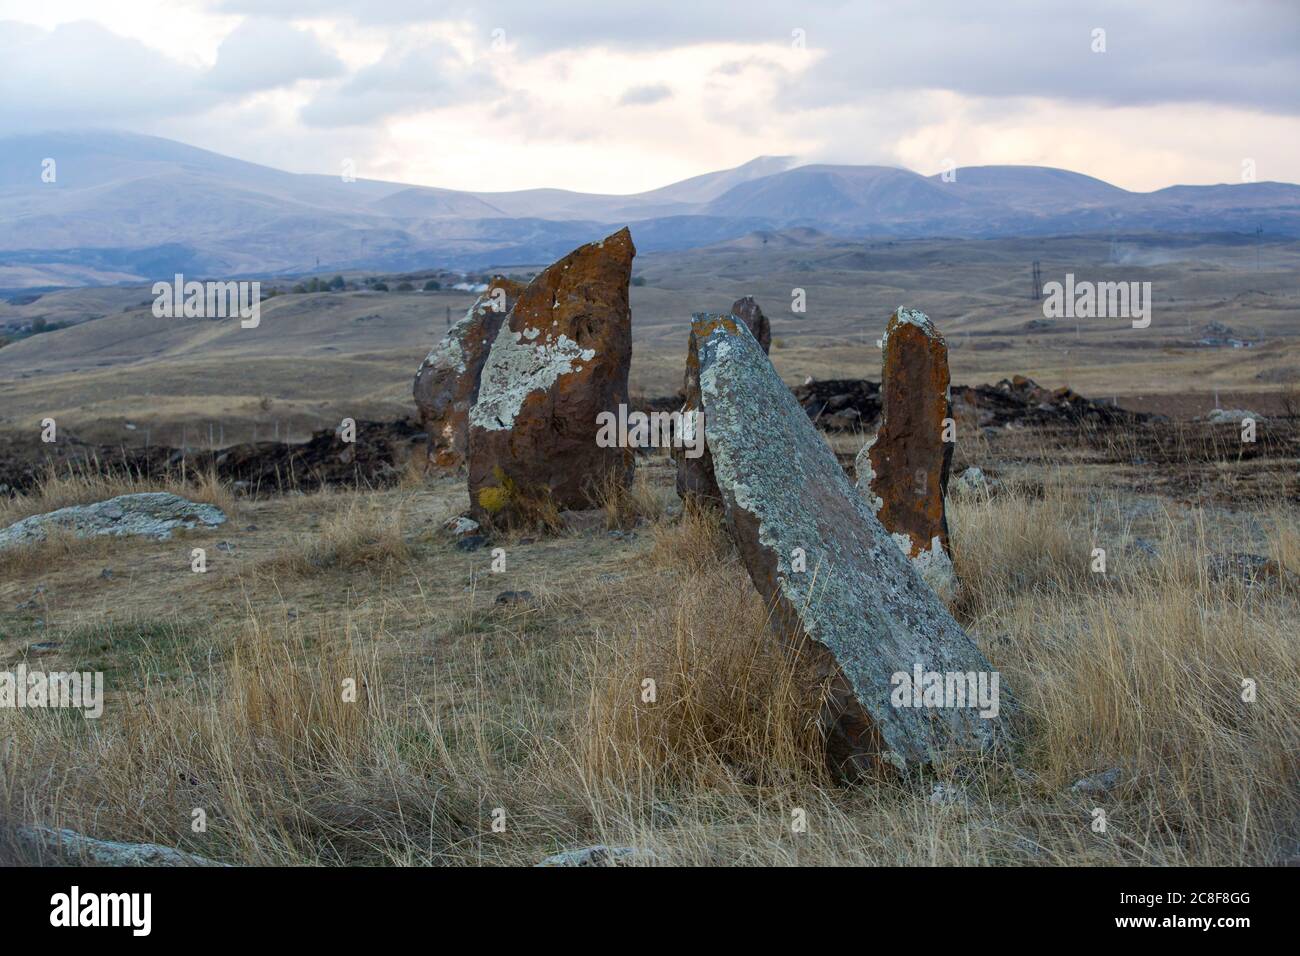 Carahunge, situado en una llanura dramática, es un sitio arqueológico prehistórico cerca de la ciudad de Sisian en la provincia de Syunik de Armenia. Foto de stock